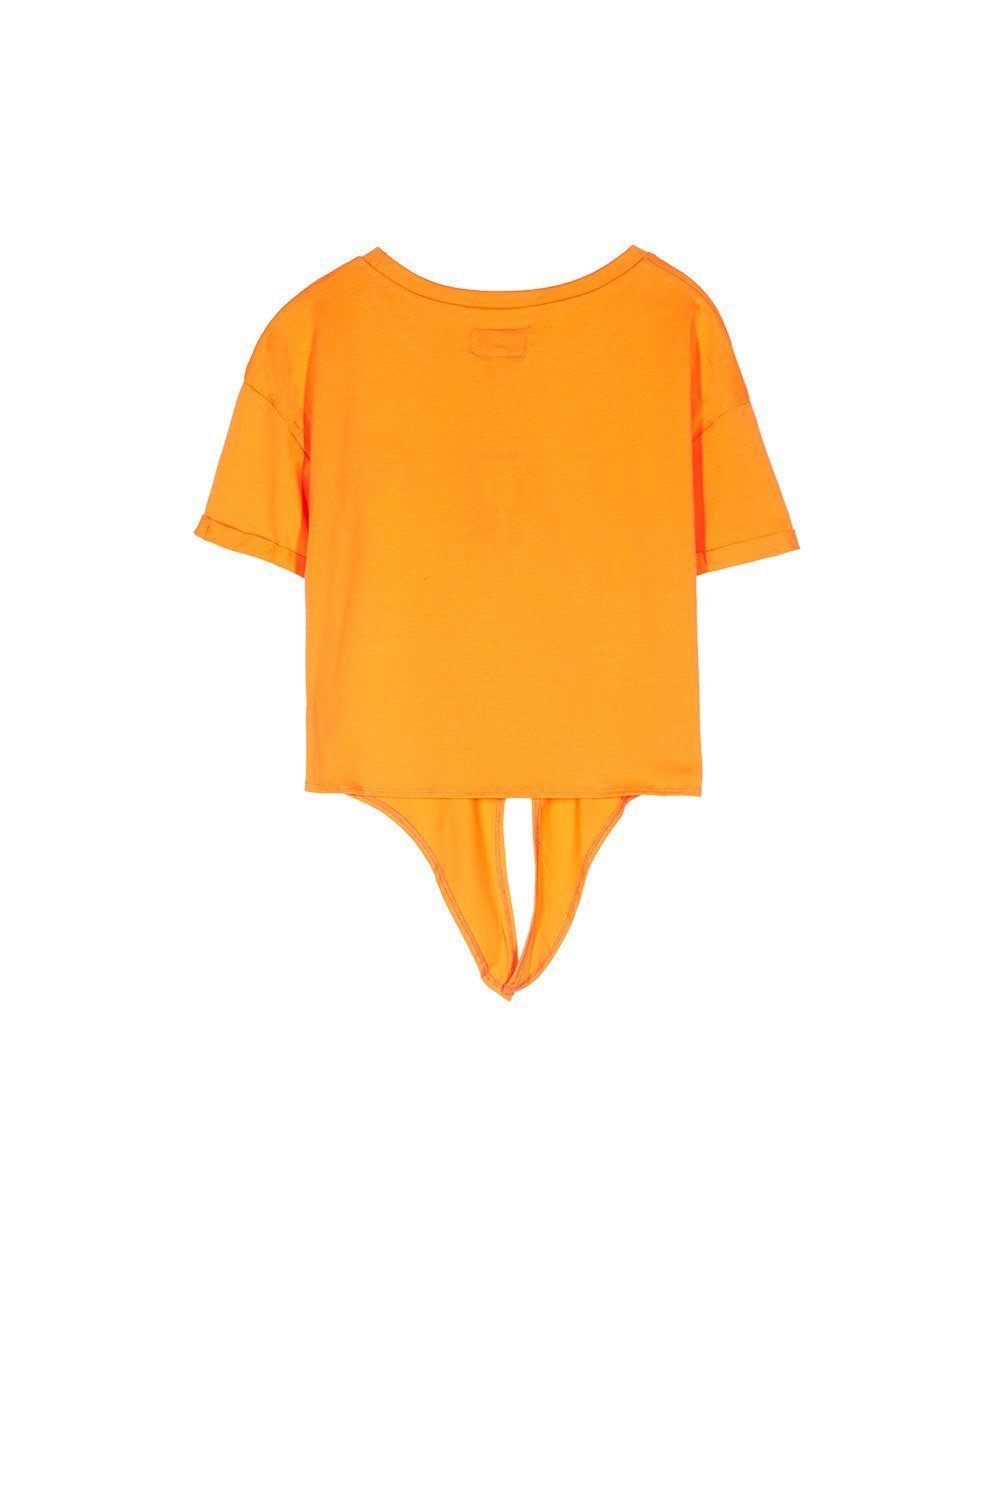 Sixth June - T-shirt patch poitrine à nouer orange